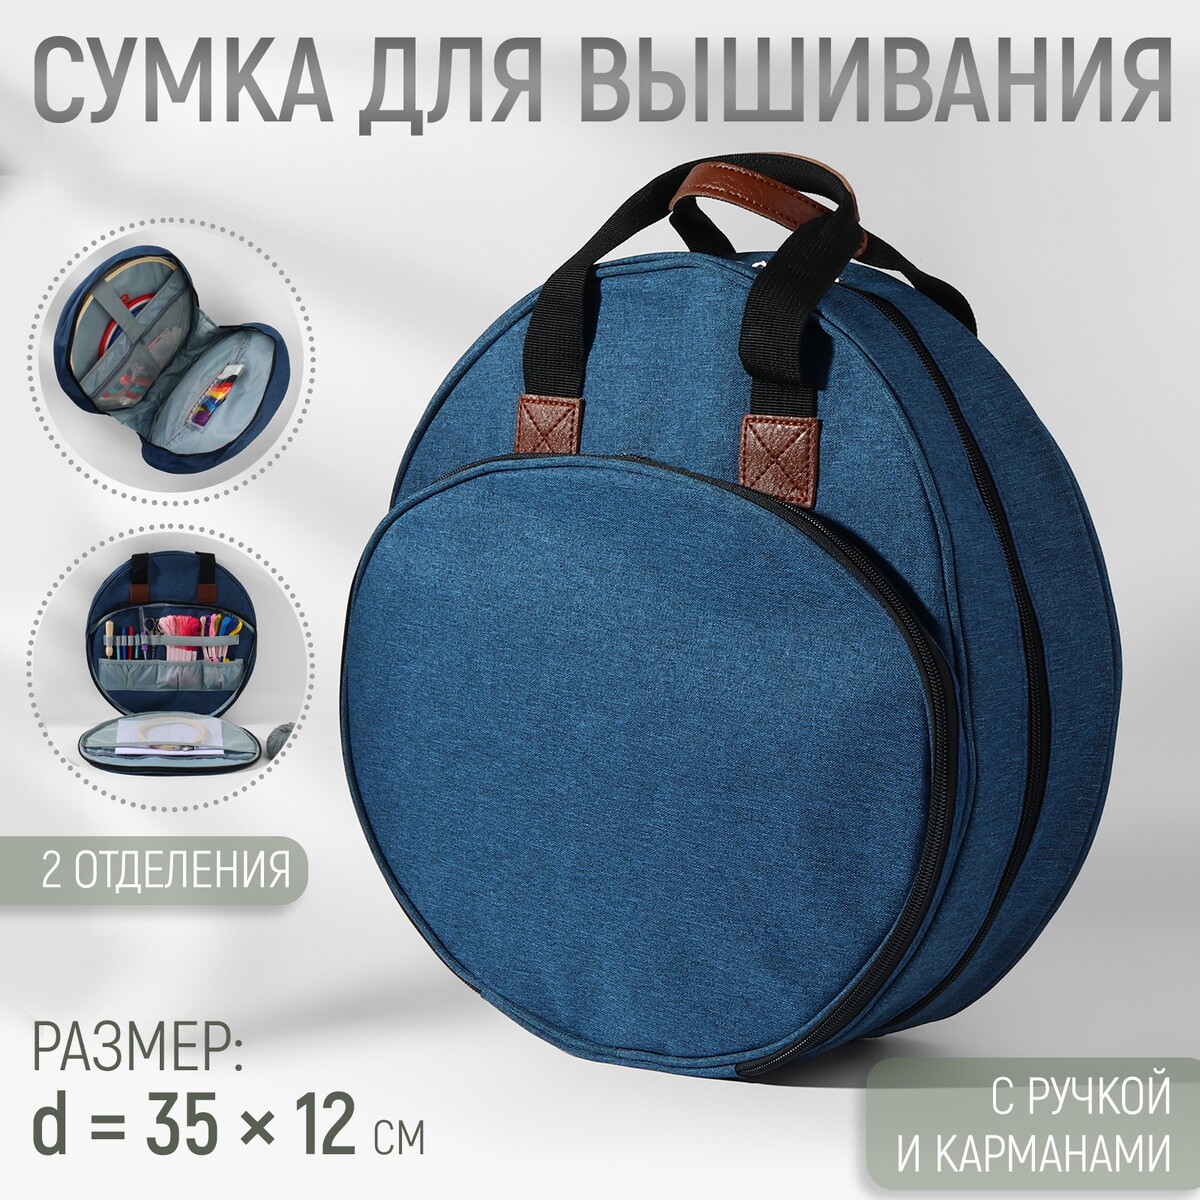 Сумка для вышивания, 2 отделения на молнии, с ручками, d = 35 × 12 см, цвет синий сумка для вышивания 2 отделения на молнии с ручками d 35 × 12 см синий